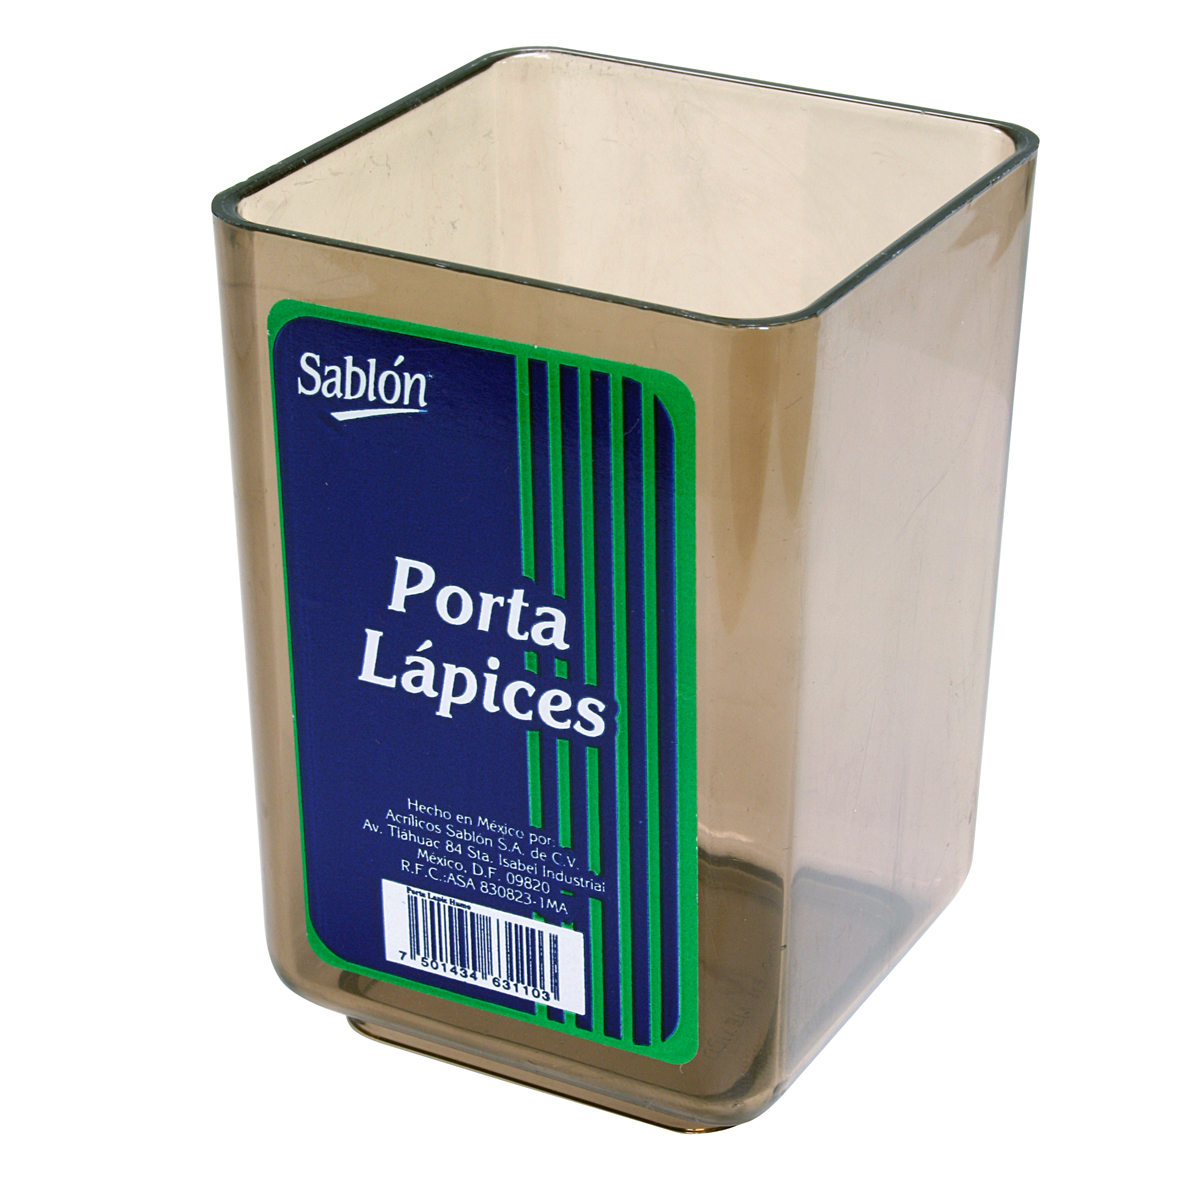 PORTA LAPIZ PLAST.HUMO 3106HU     SABLON 631103